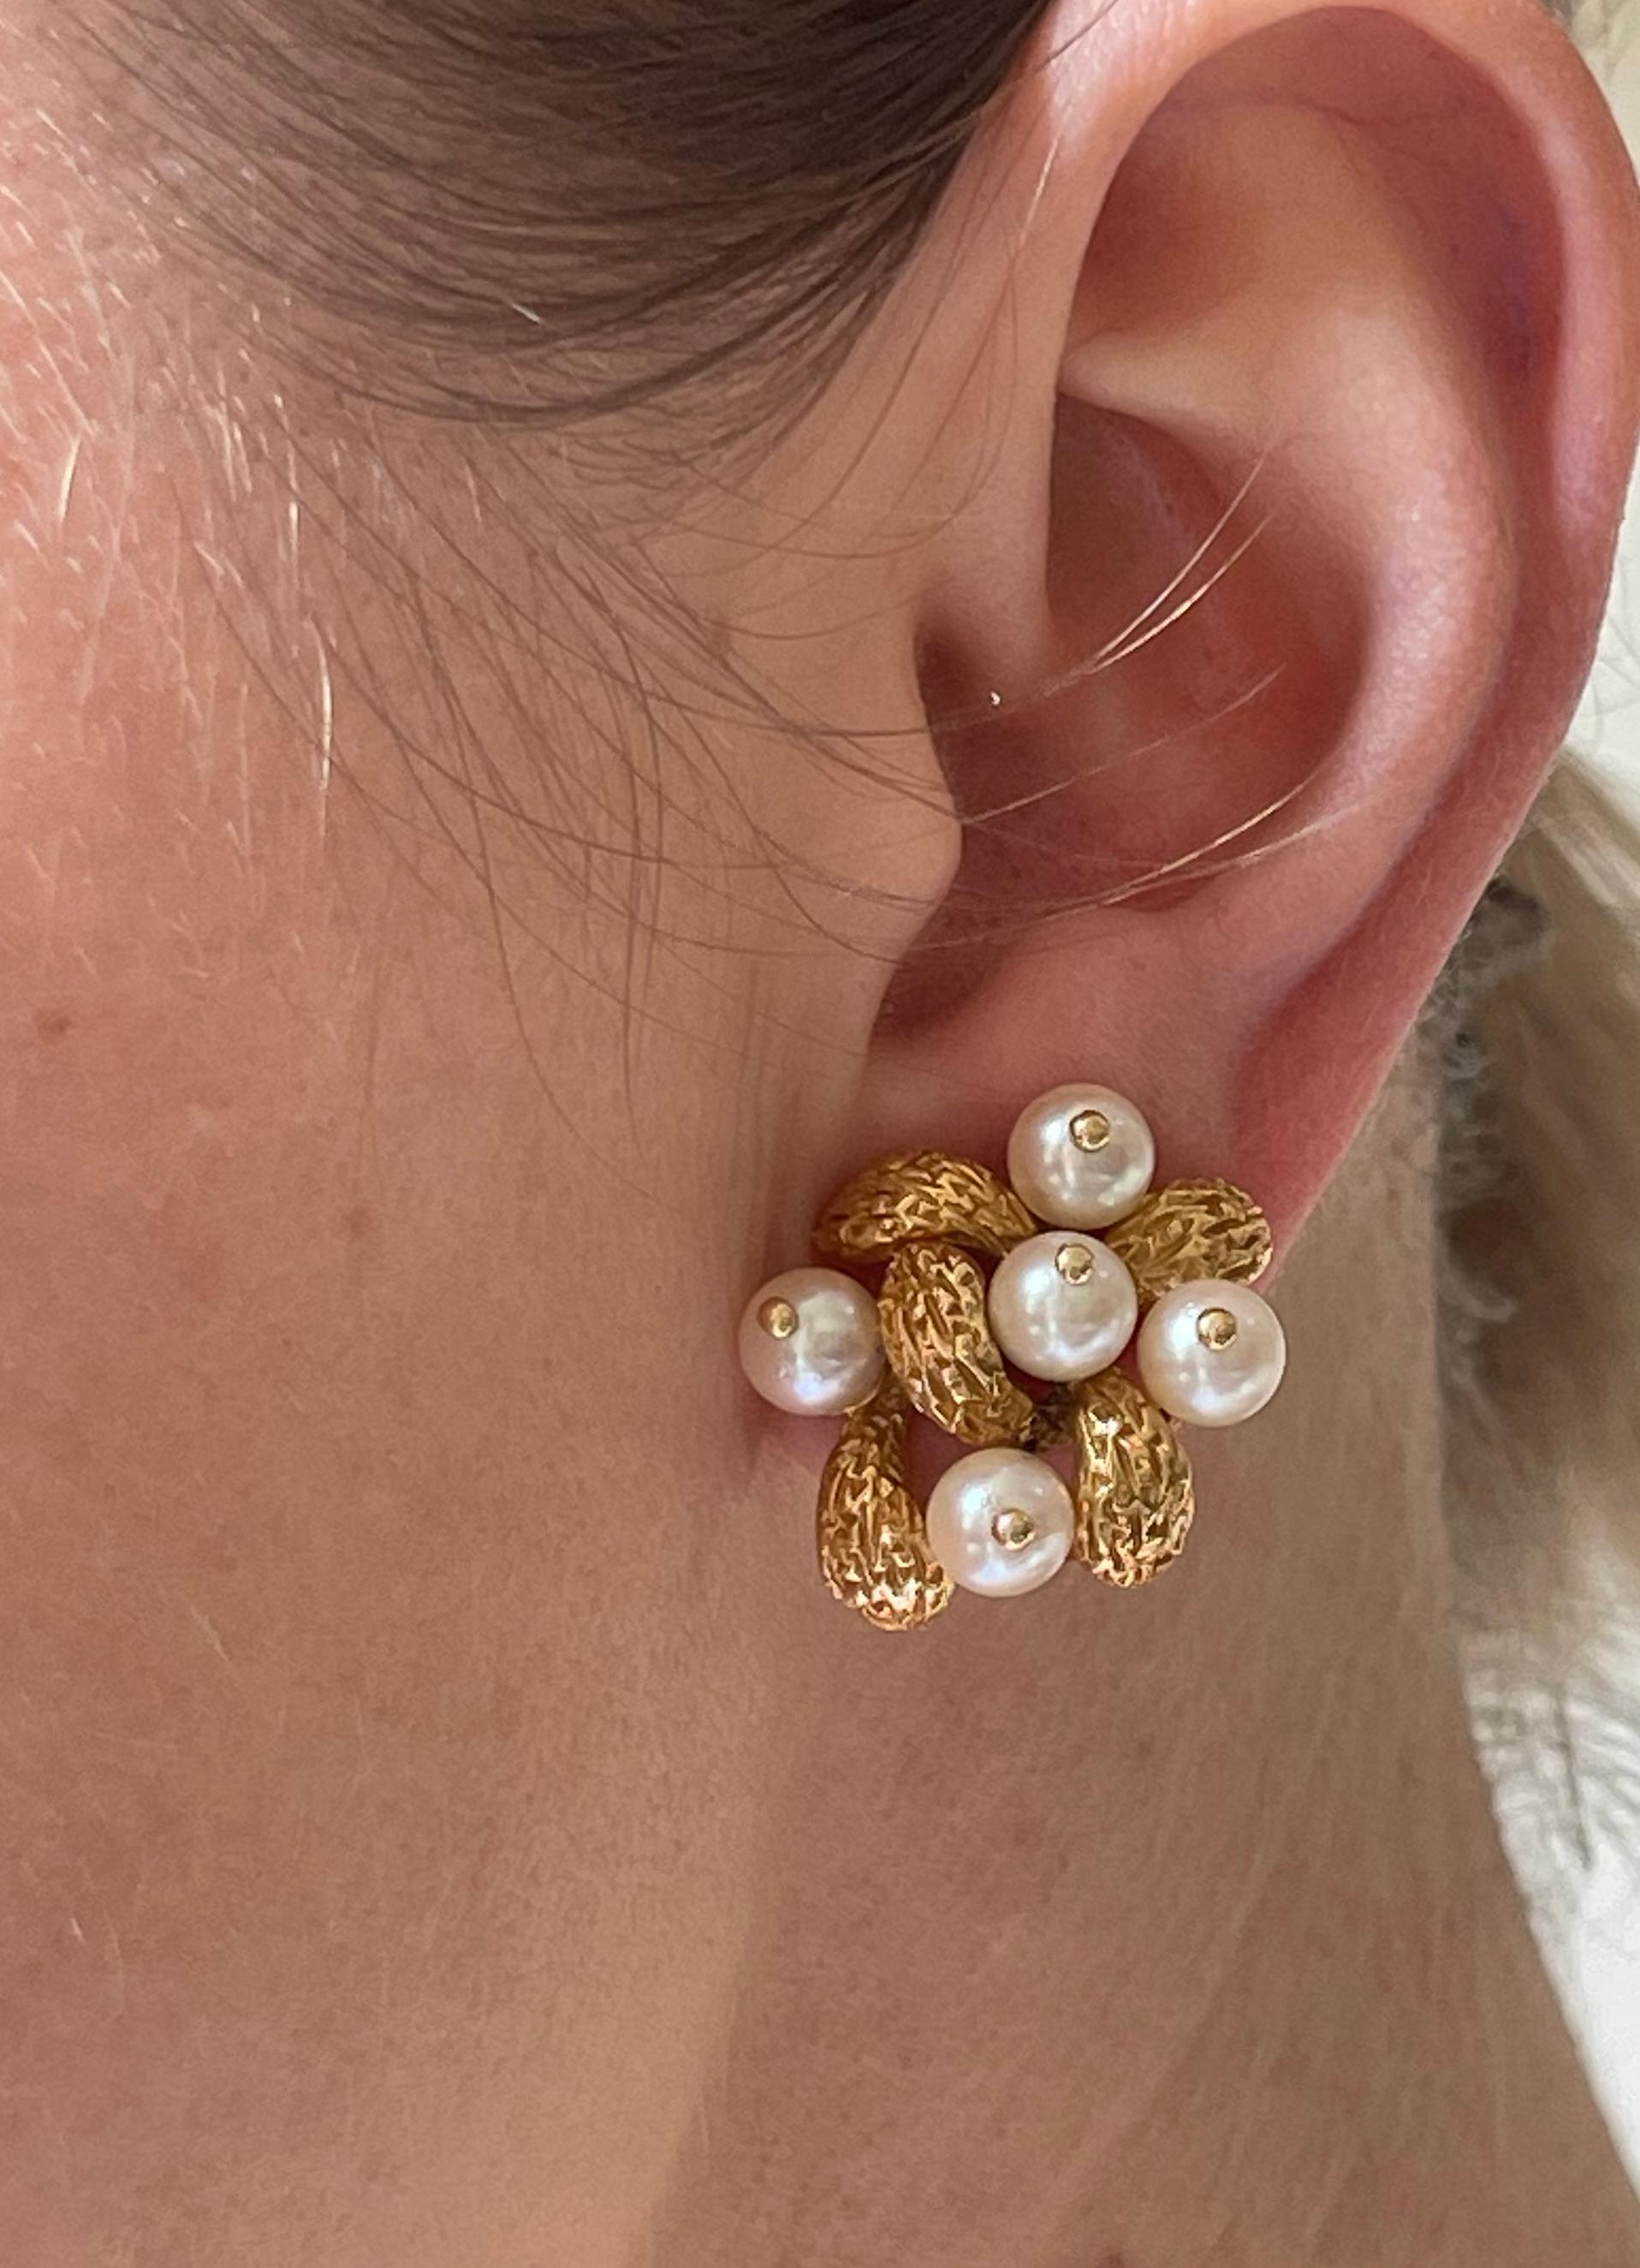 Pair of vintage circa 1960s 18k gold Van Cleef & Arpels earrings with 6mm pearls. Earrings measure 7/8